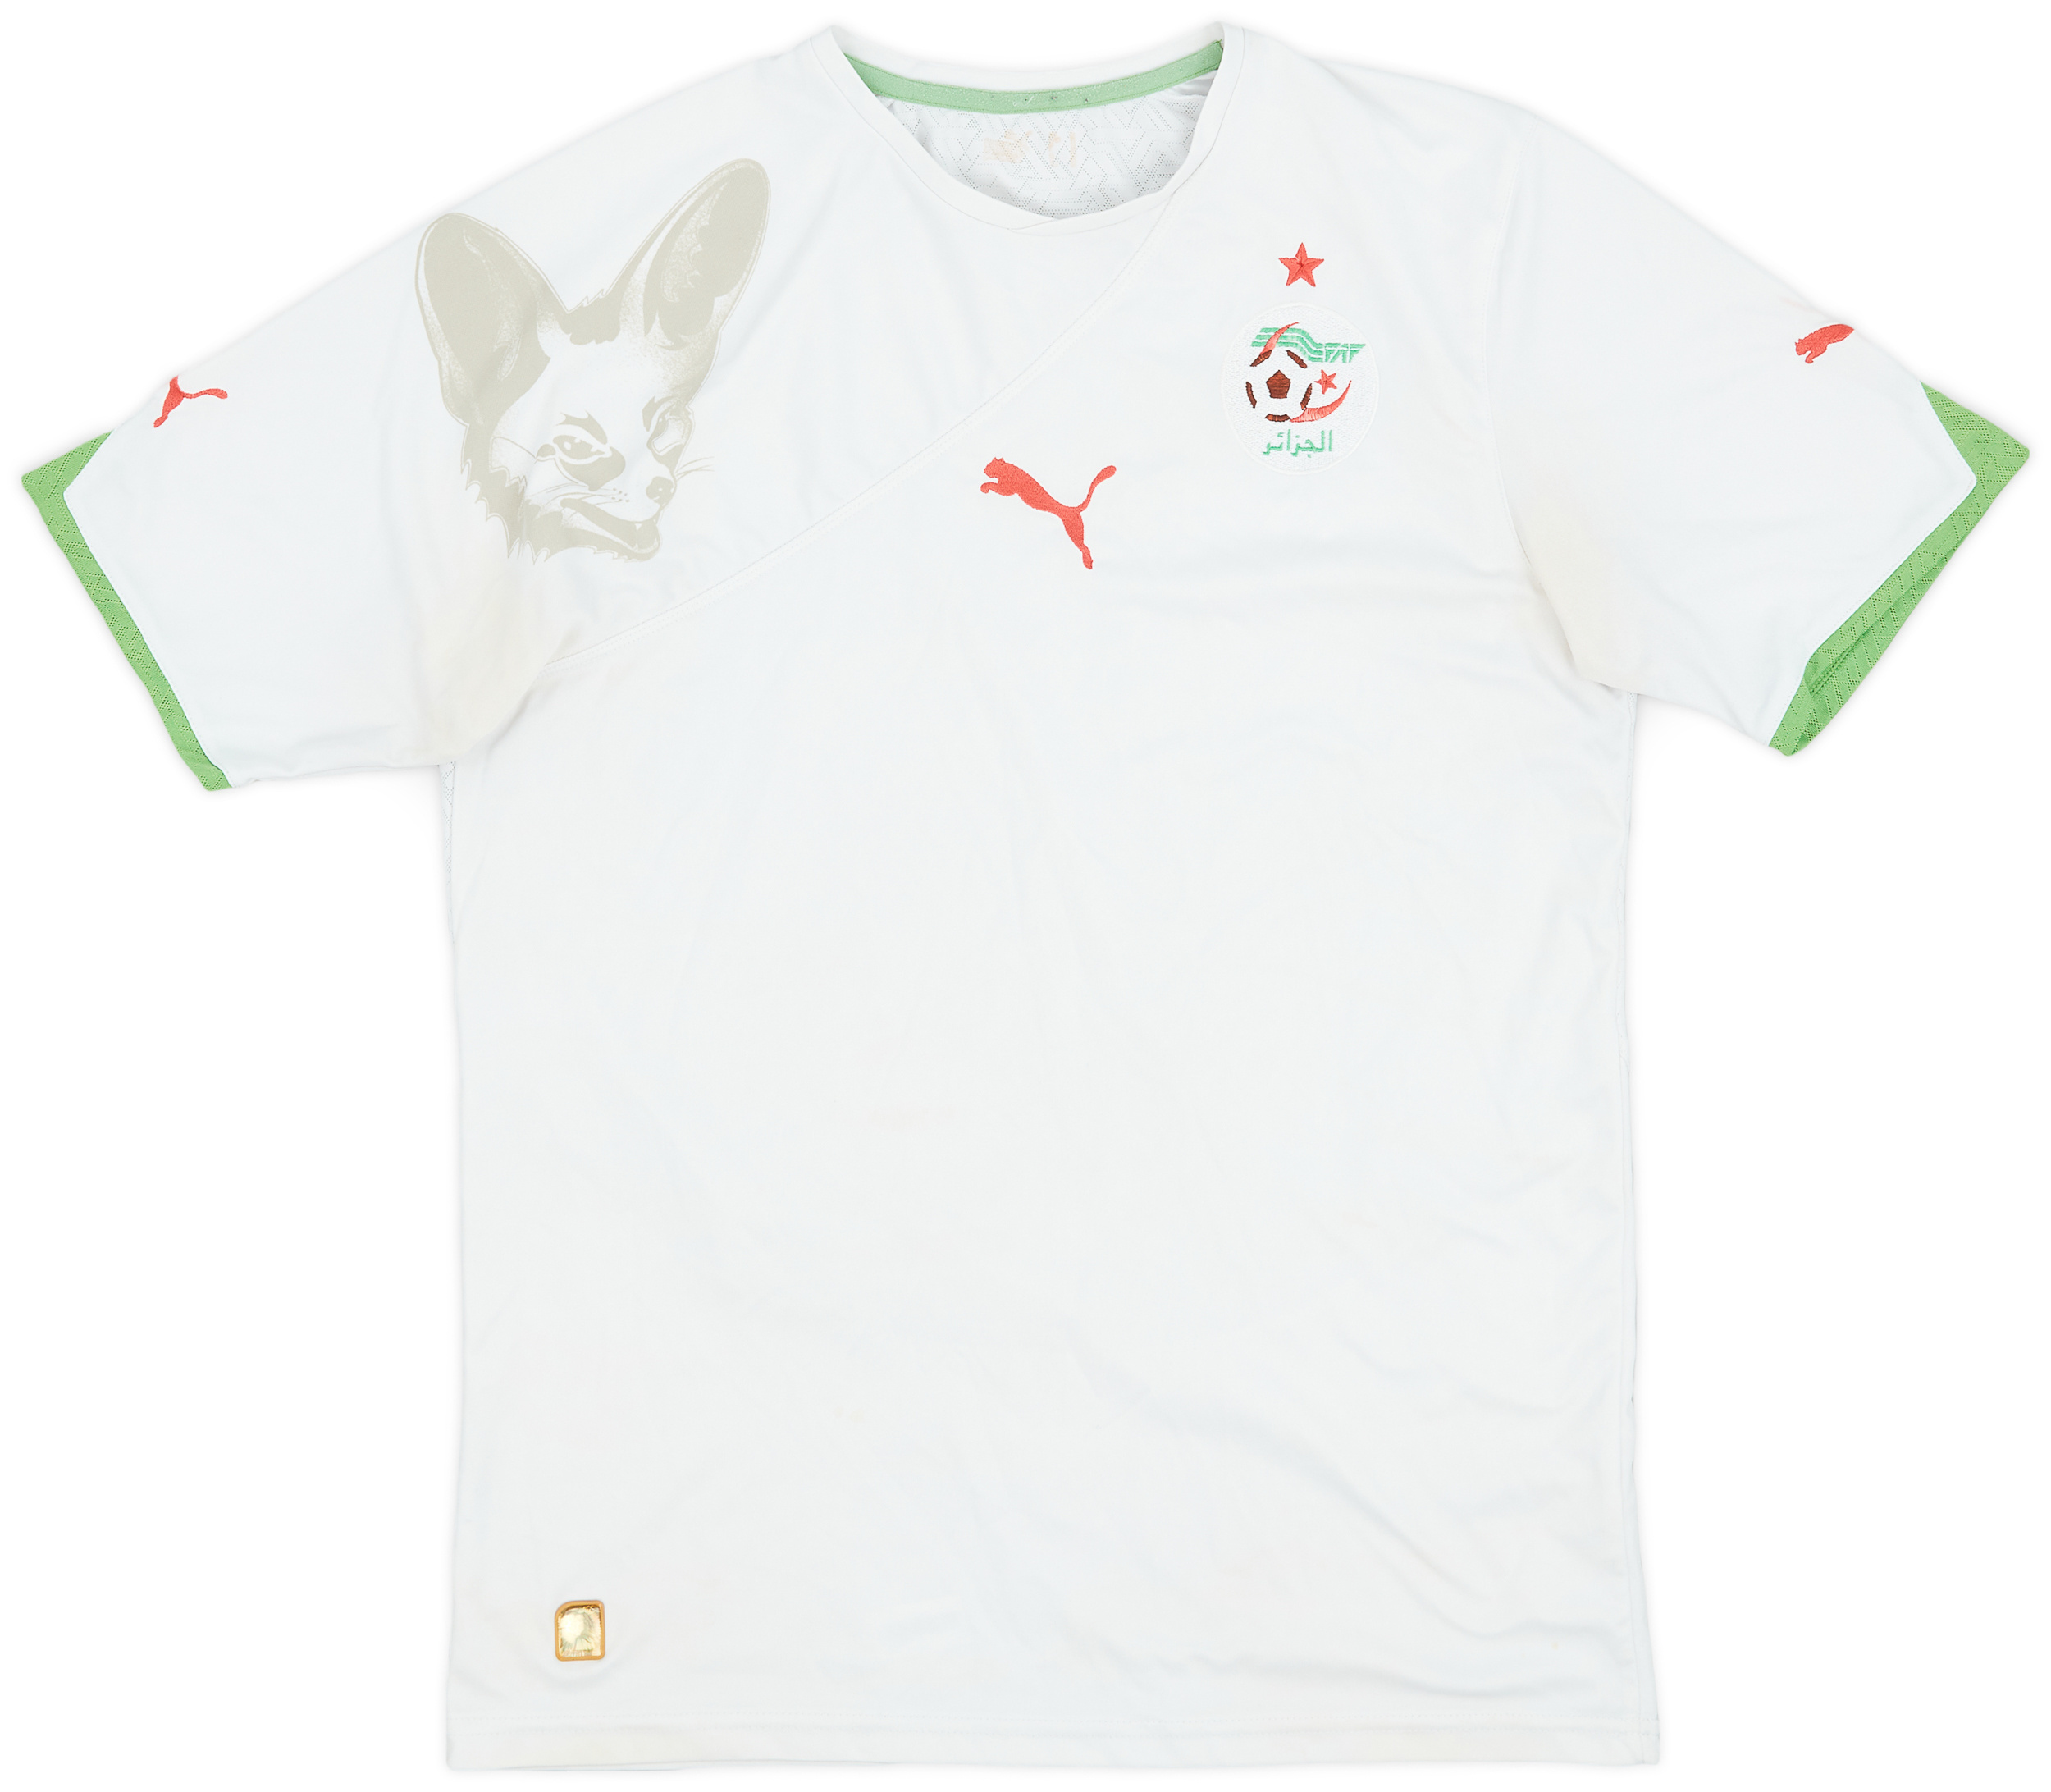 2010-11 Algeria Home Shirt - 5/10 - ()